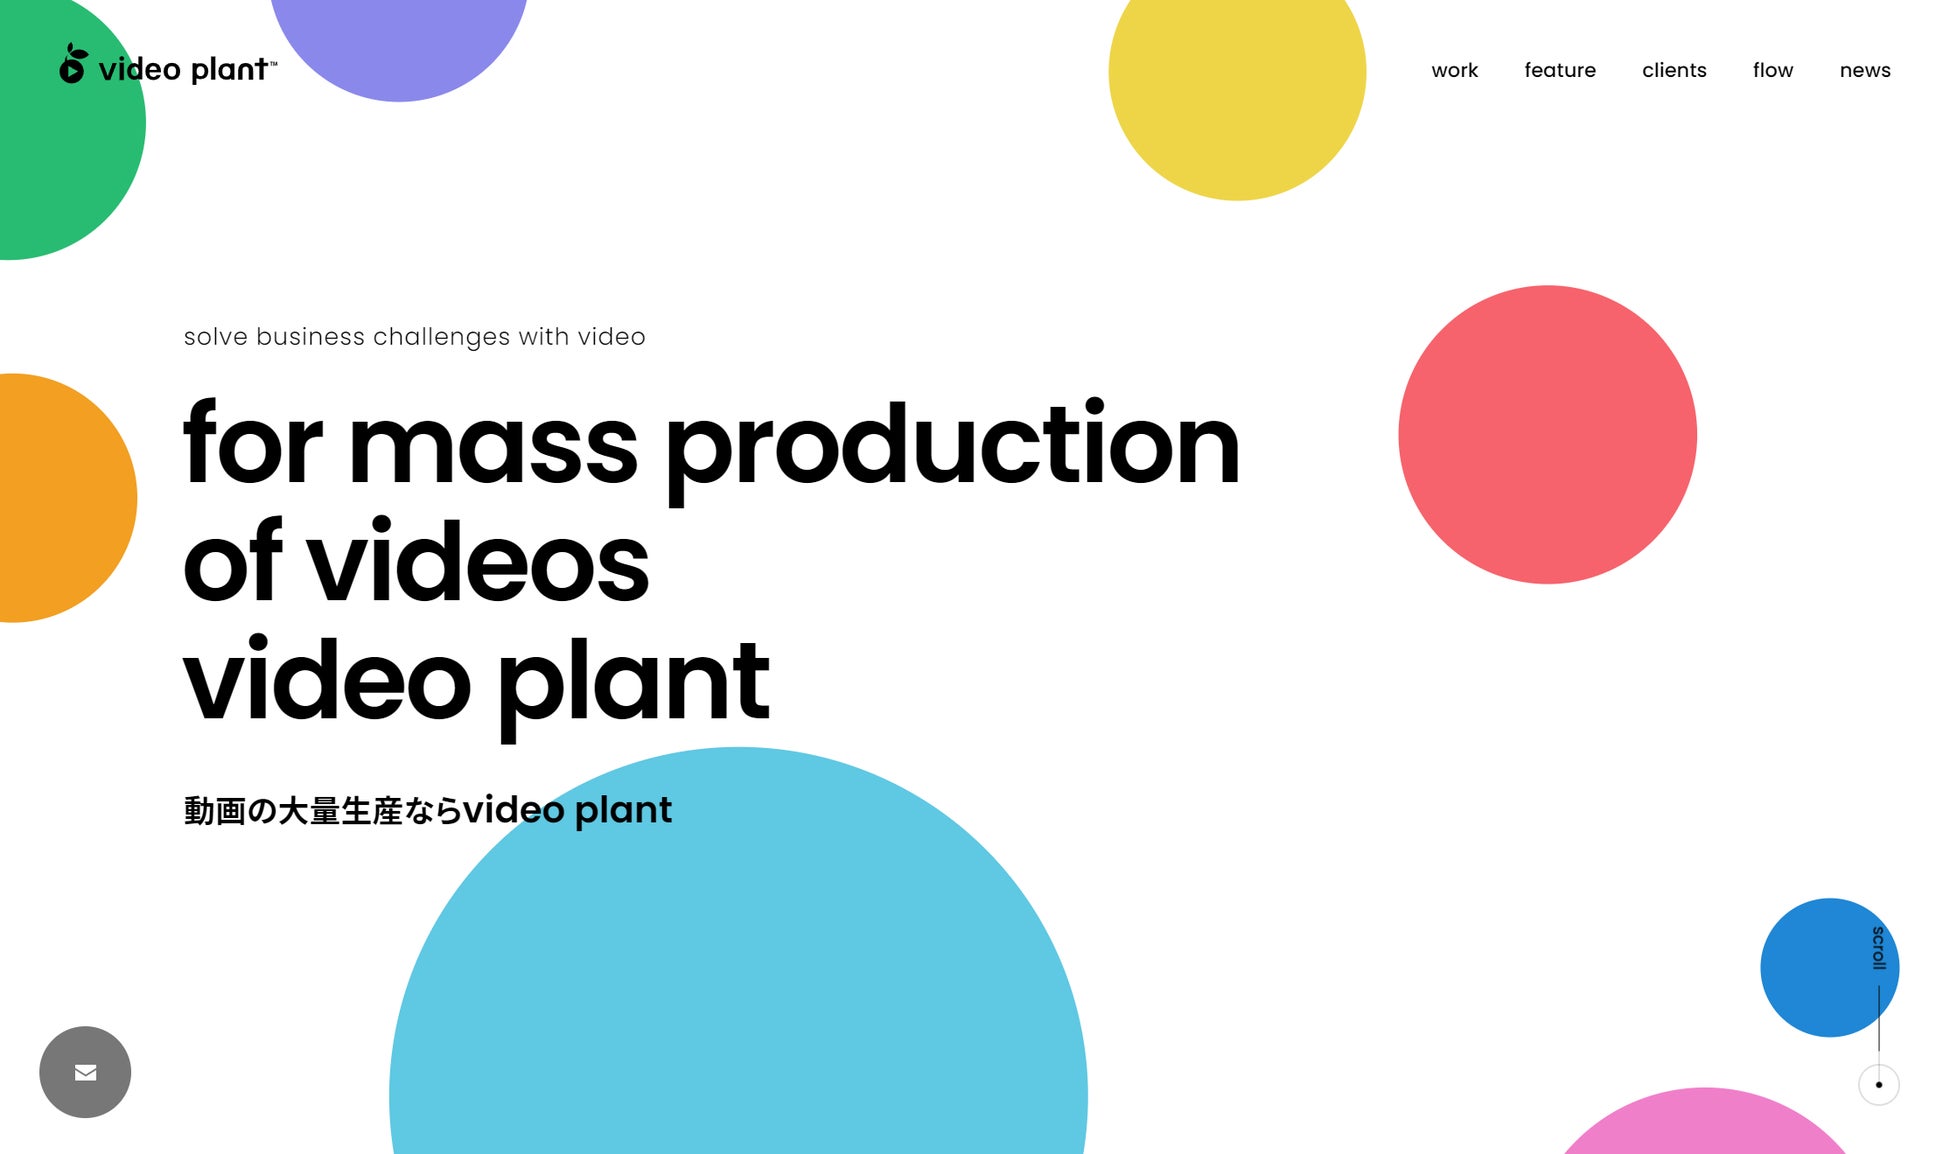 動画制作実績1万本を突破！ビジネス動画制作クラウド「video plant」がサイトリニューアルし業務拡大へのサブ画像1